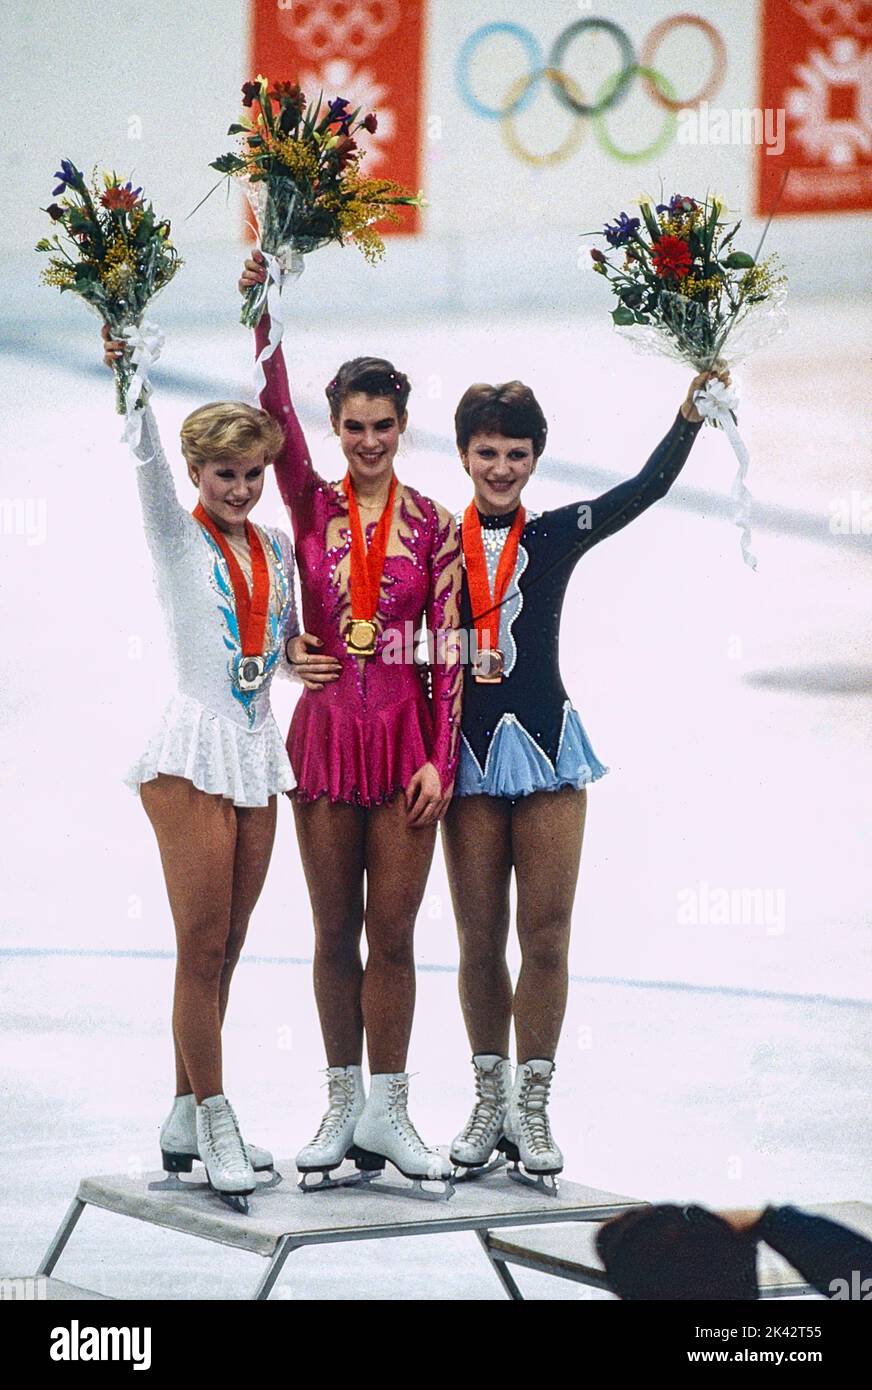 L-R Rosalynn Sumners (USA), Katarina Witt (GDR), Kira Ivanova (URS) médaillée de patinage artistique pour dames aux Jeux Olympiques d'hiver de 1984. Banque D'Images